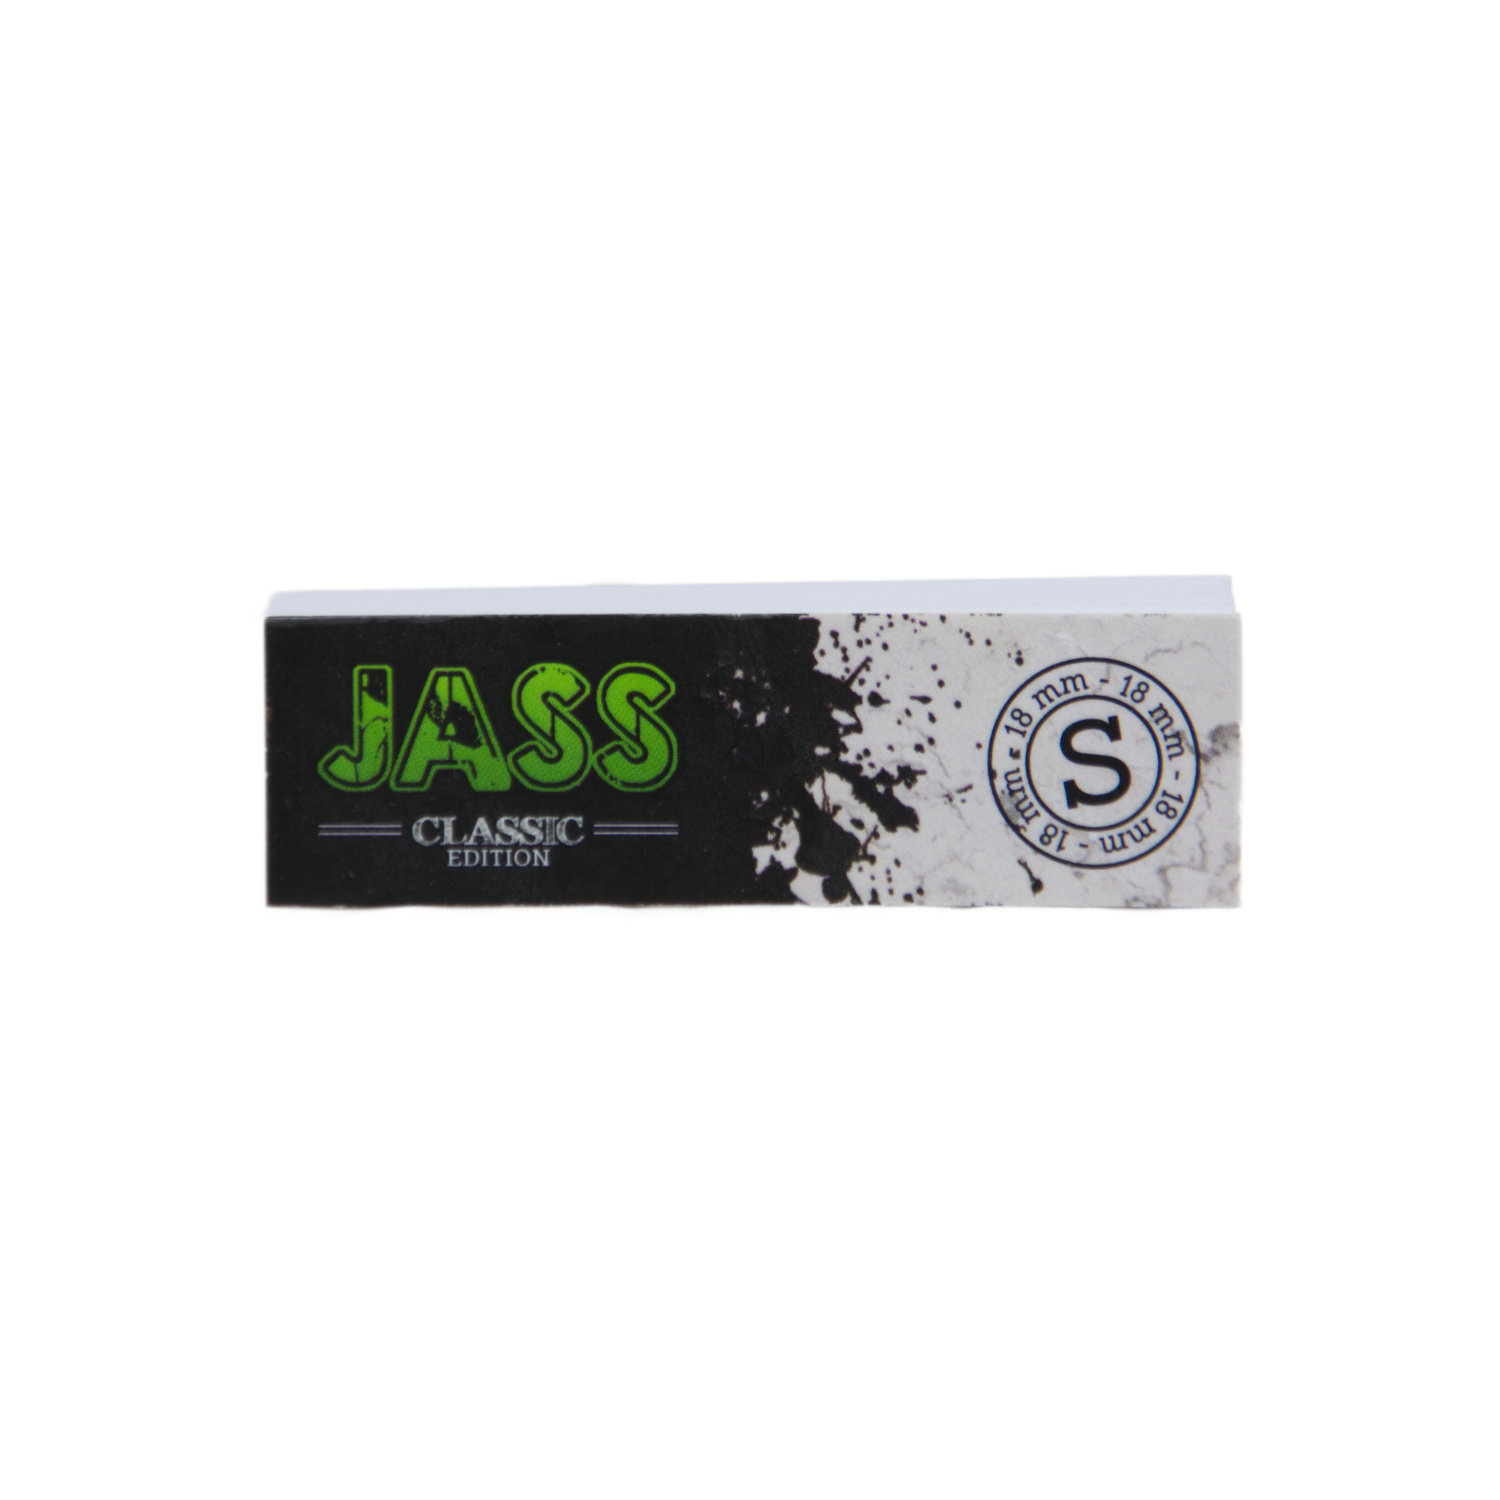 Filtres en carton “Jass” Classic Edition (S) perforés